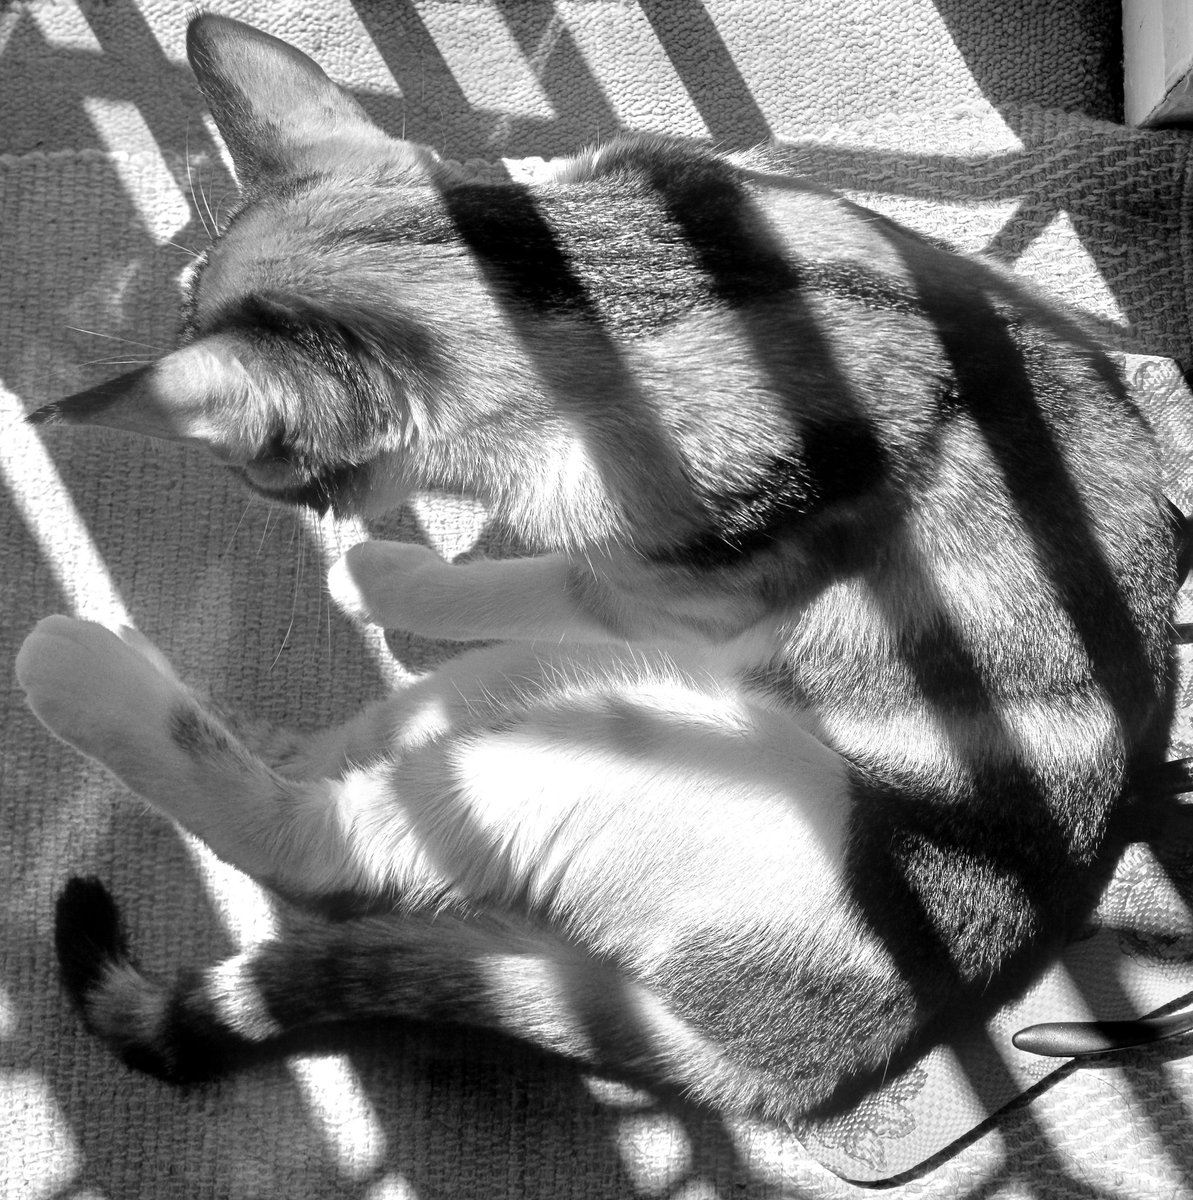 Finding alignment 😸🙏

#catlife #catsinblackandwhite #catsnoirfriday #alignedcats #catsinsunshine 

instagram.com/p/C3sUOheo2u1/